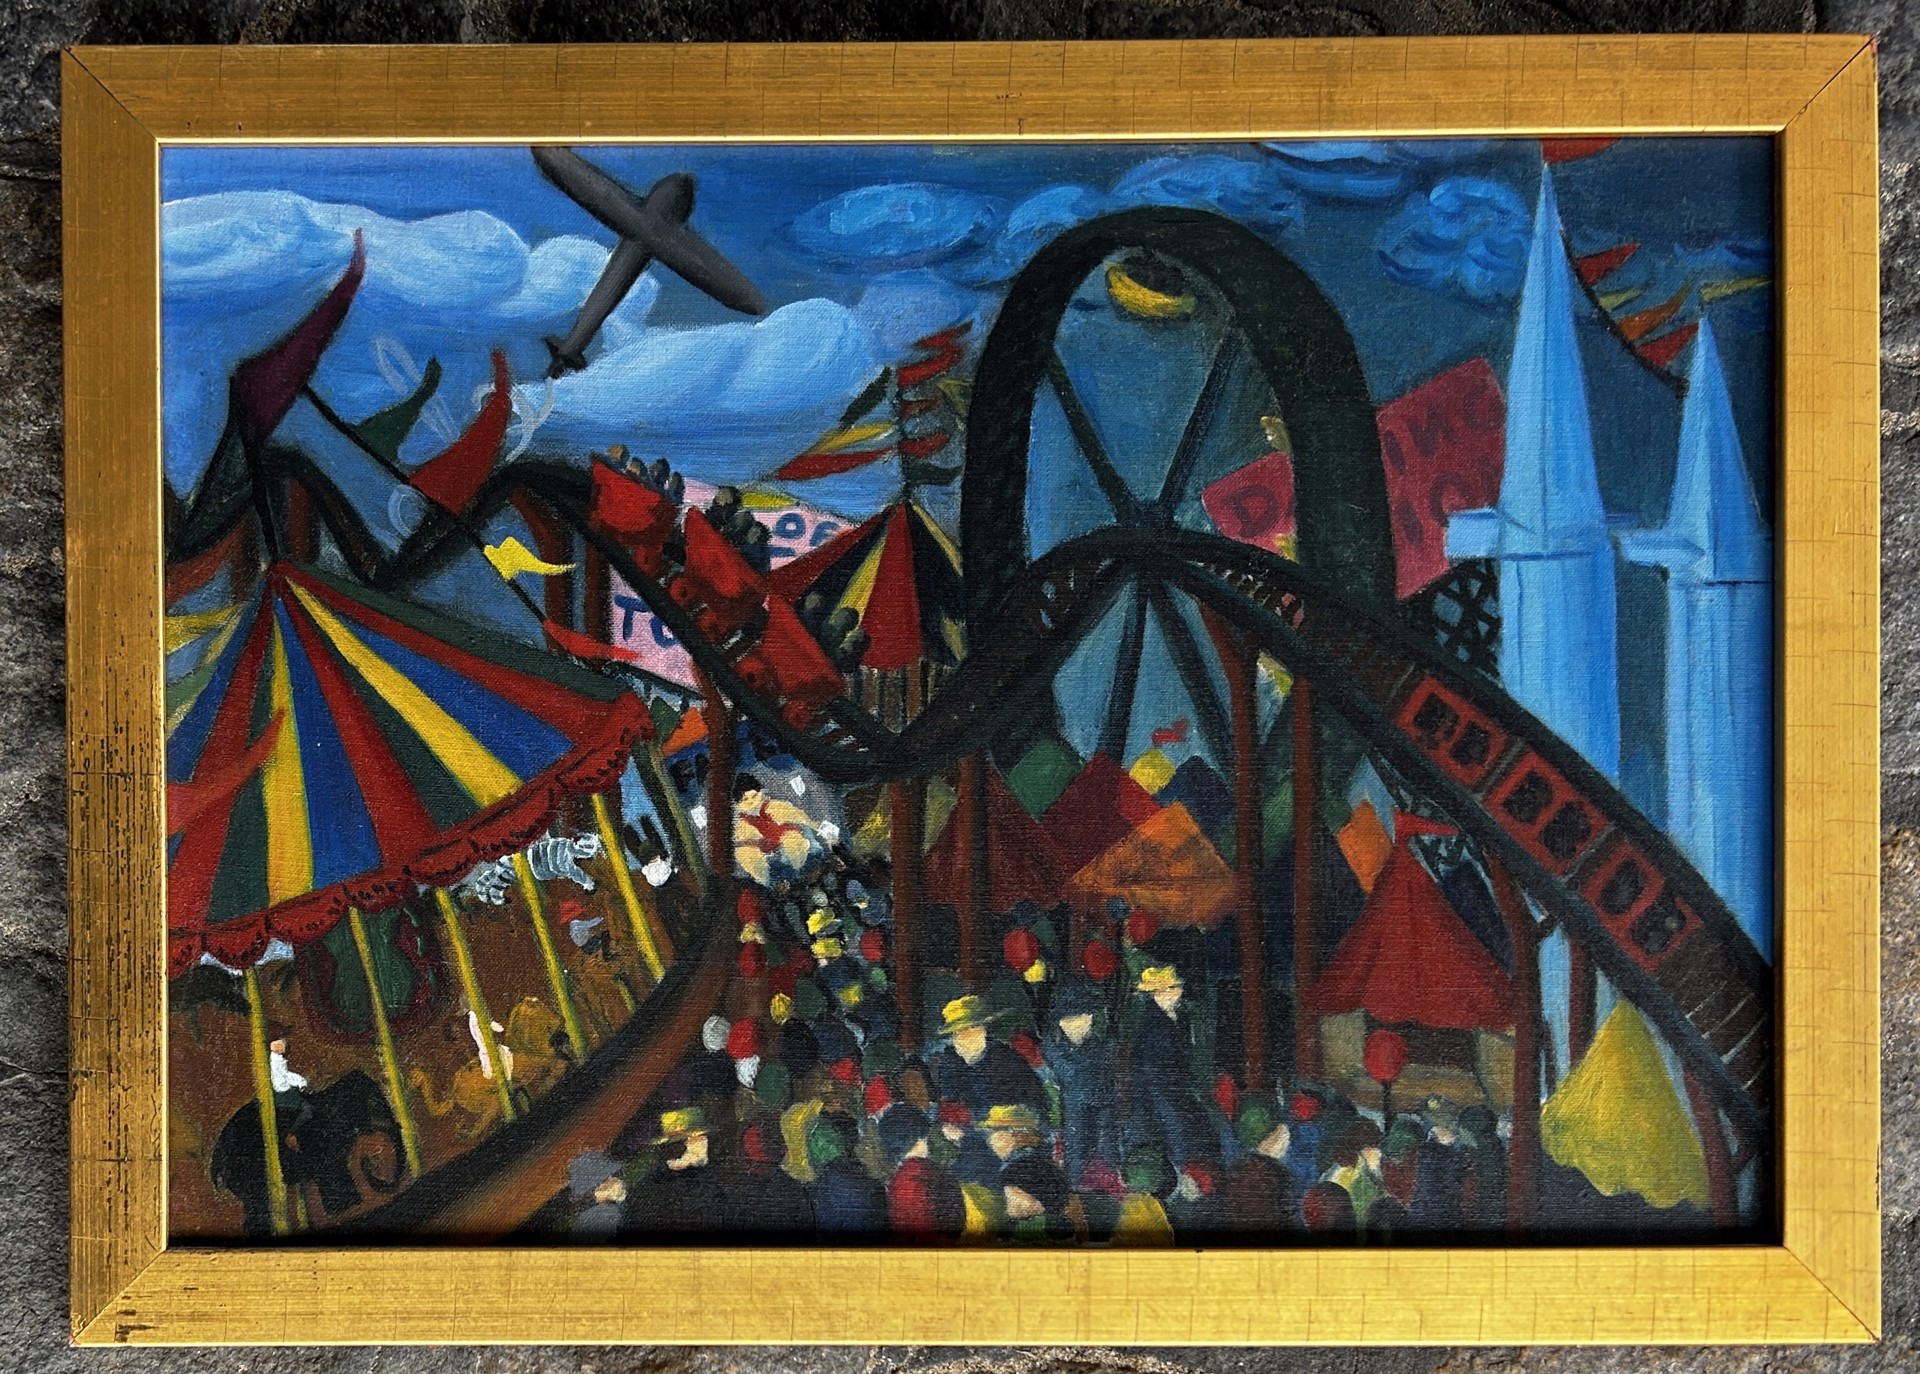 Amusement Park by Doris Lindo Lewis